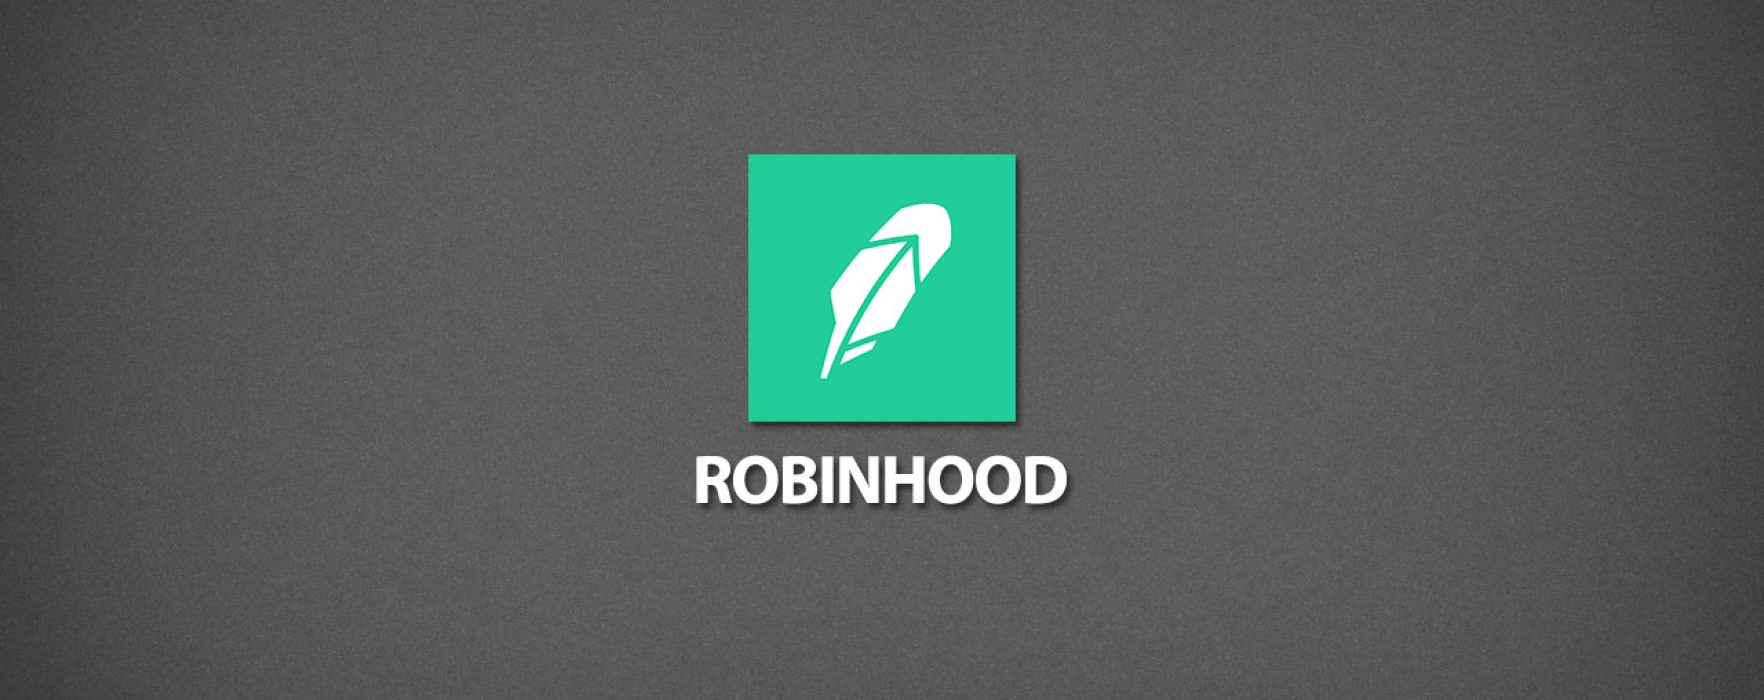 Robinhood遭网络攻击 700万用户信息泄露